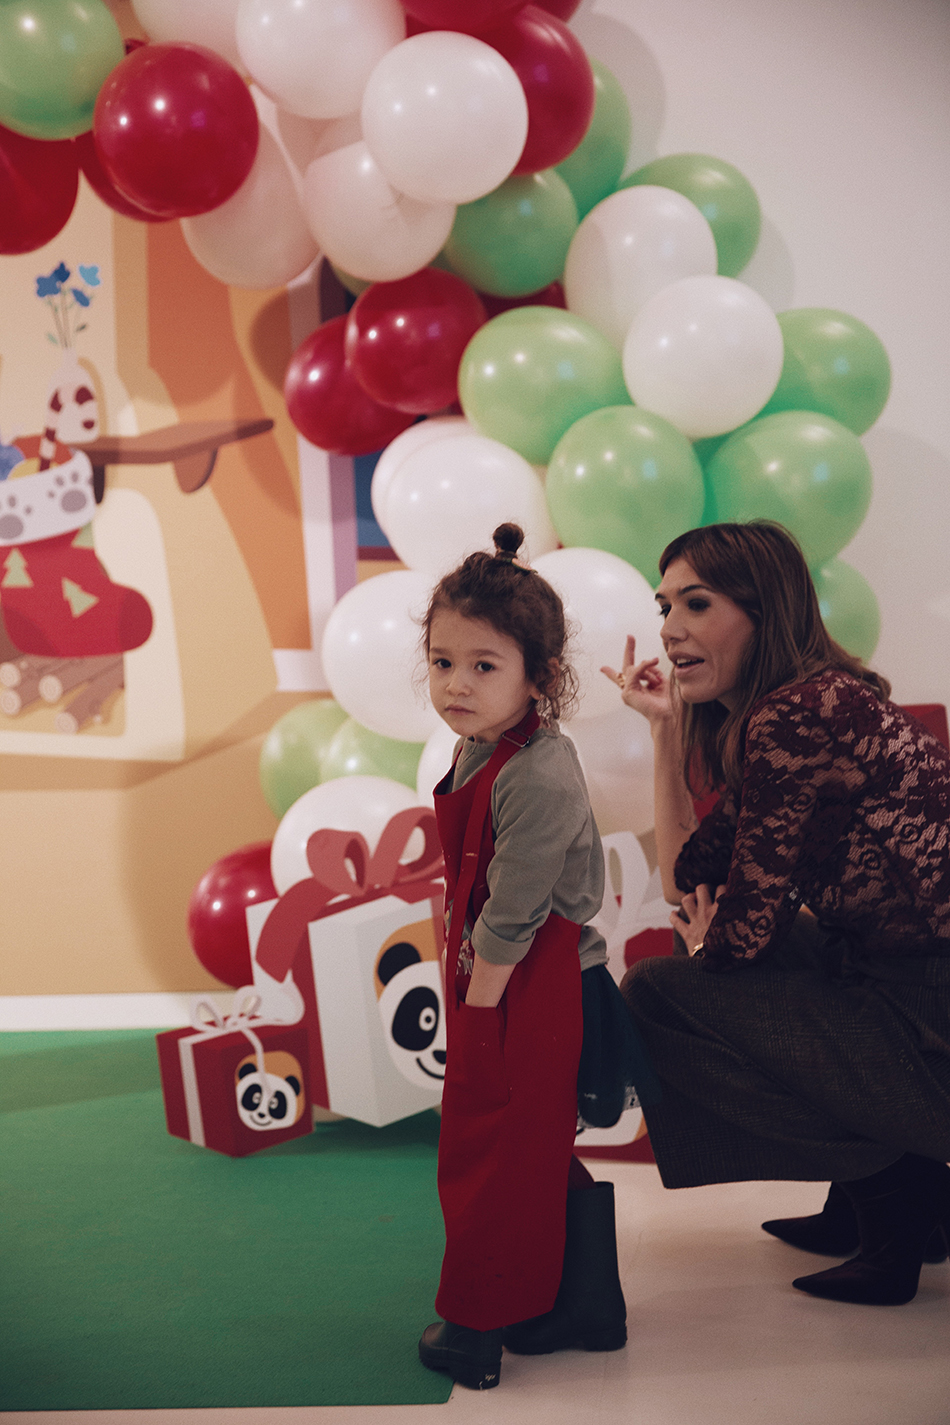 Taller de cookies y de muffins navideño para niños con la cadena de televisión infantil Canal Panda. Barbara Crespo y su hija Chloé